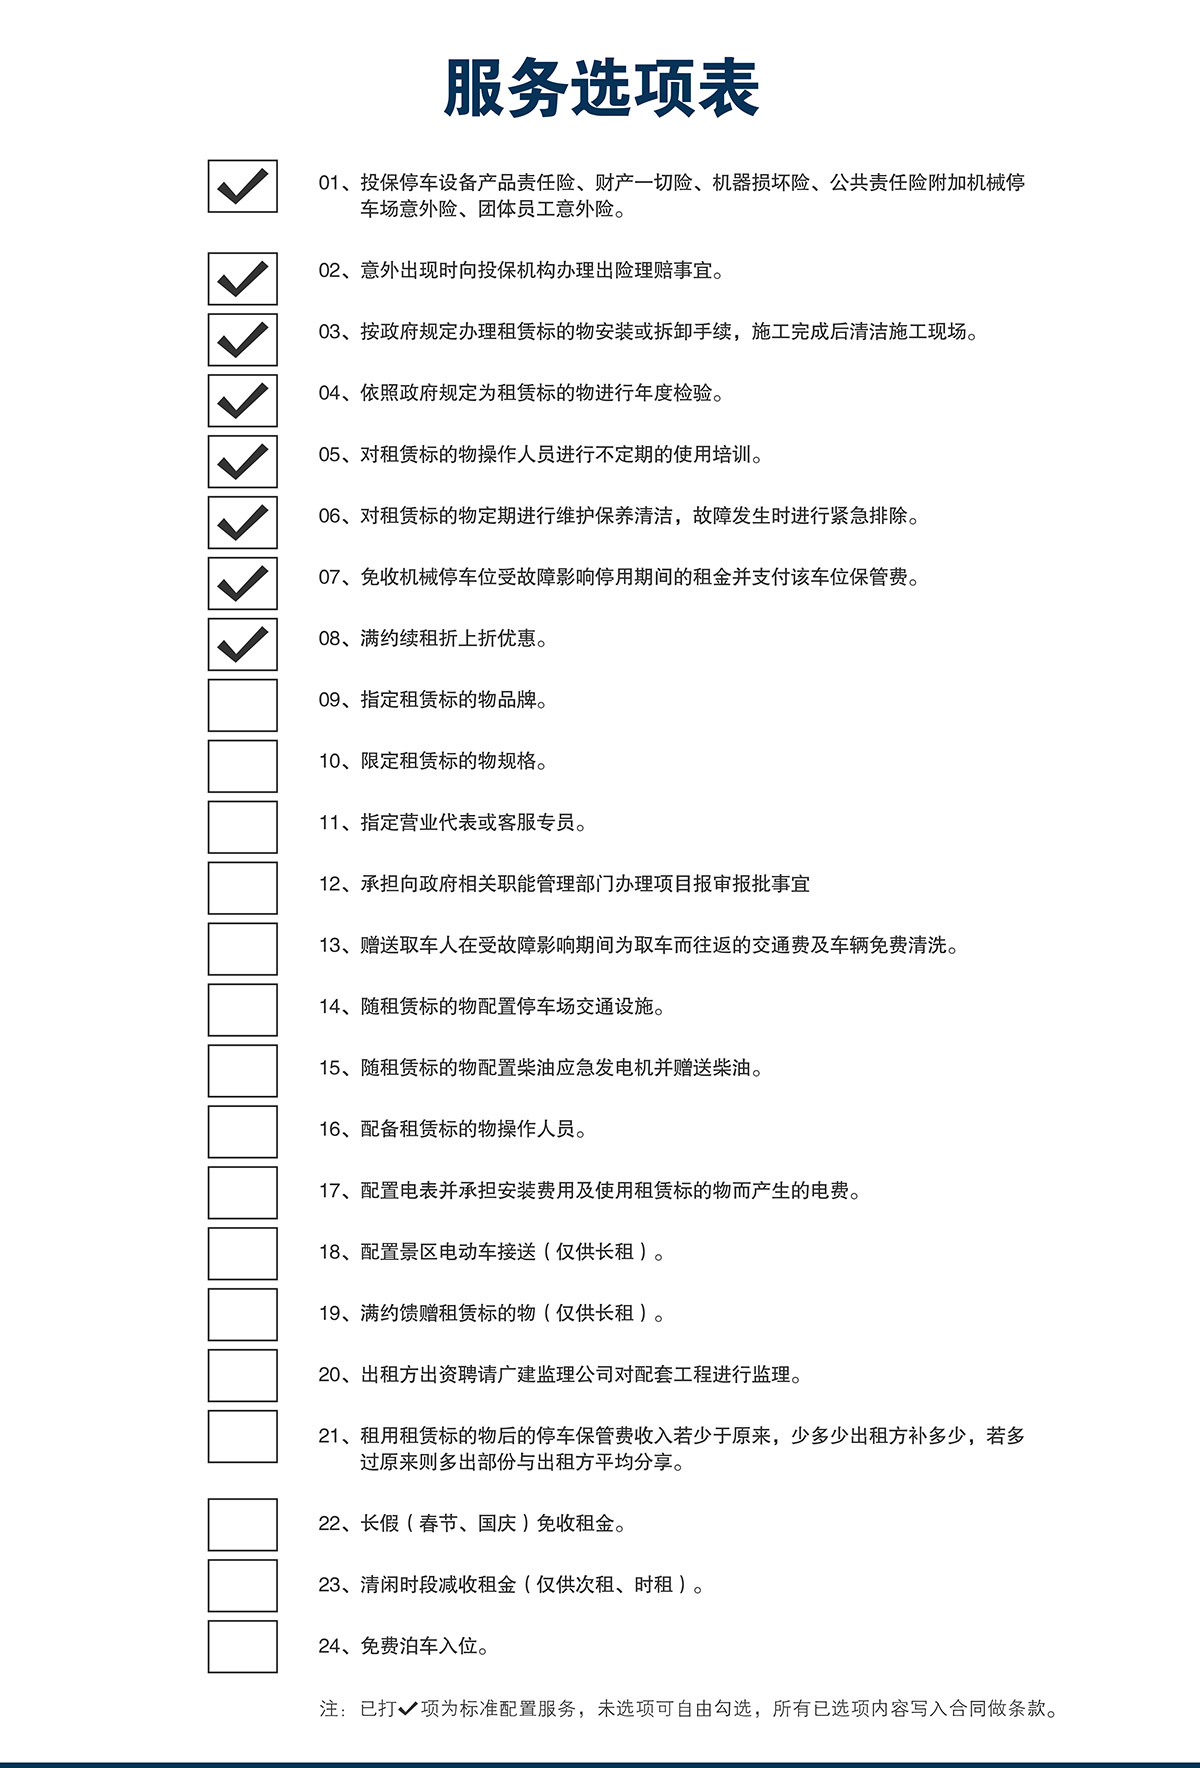 贵州莱贝机械停车位投融资建设服务选项表.jpg